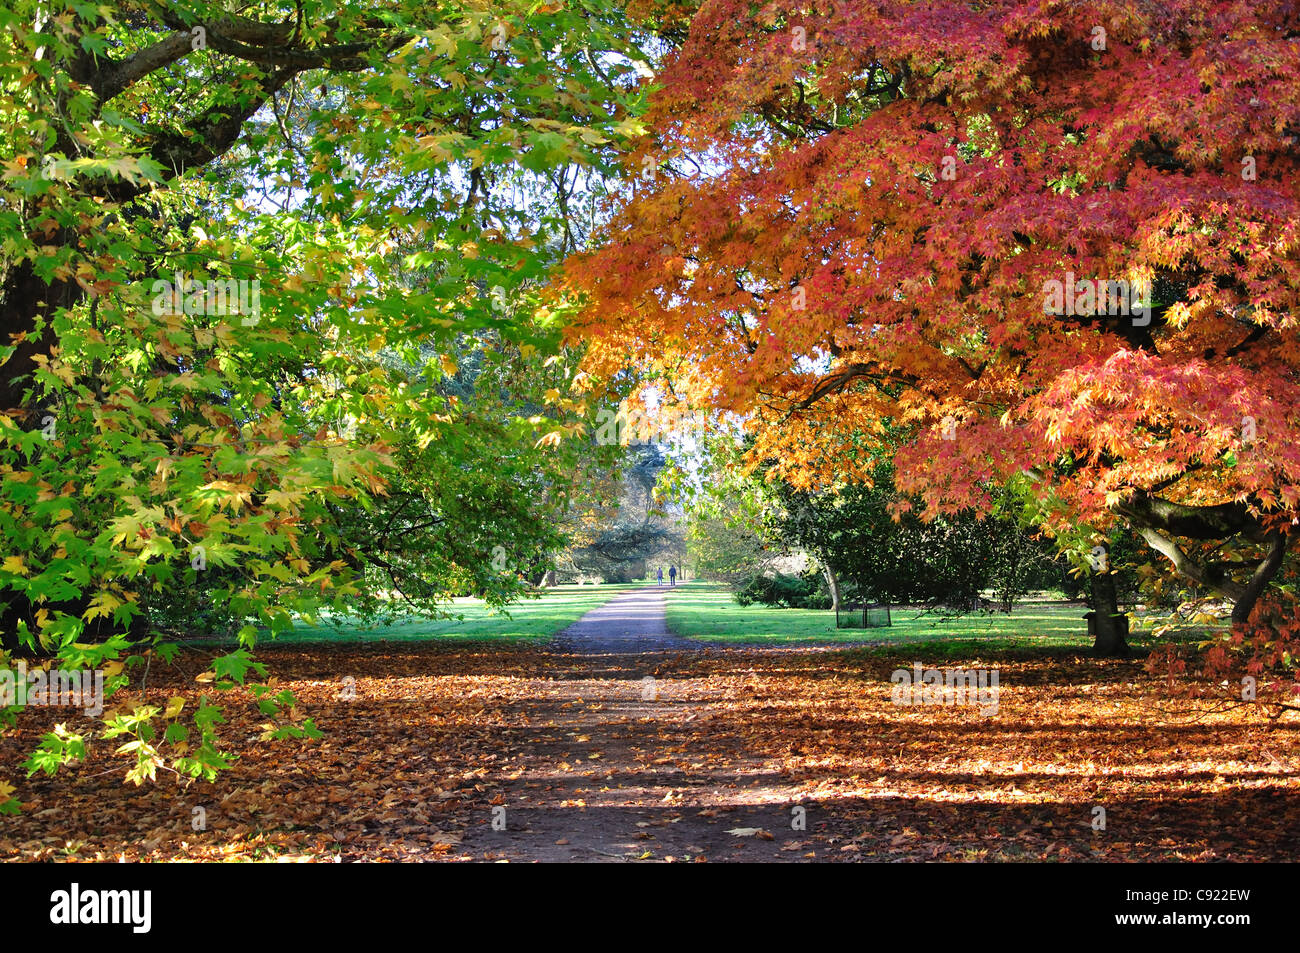 Couleurs de l'automne, l'Arboretum National de Westonbirt, près de Tetbury, Gloucestershire, Angleterre, Royaume-Uni Banque D'Images